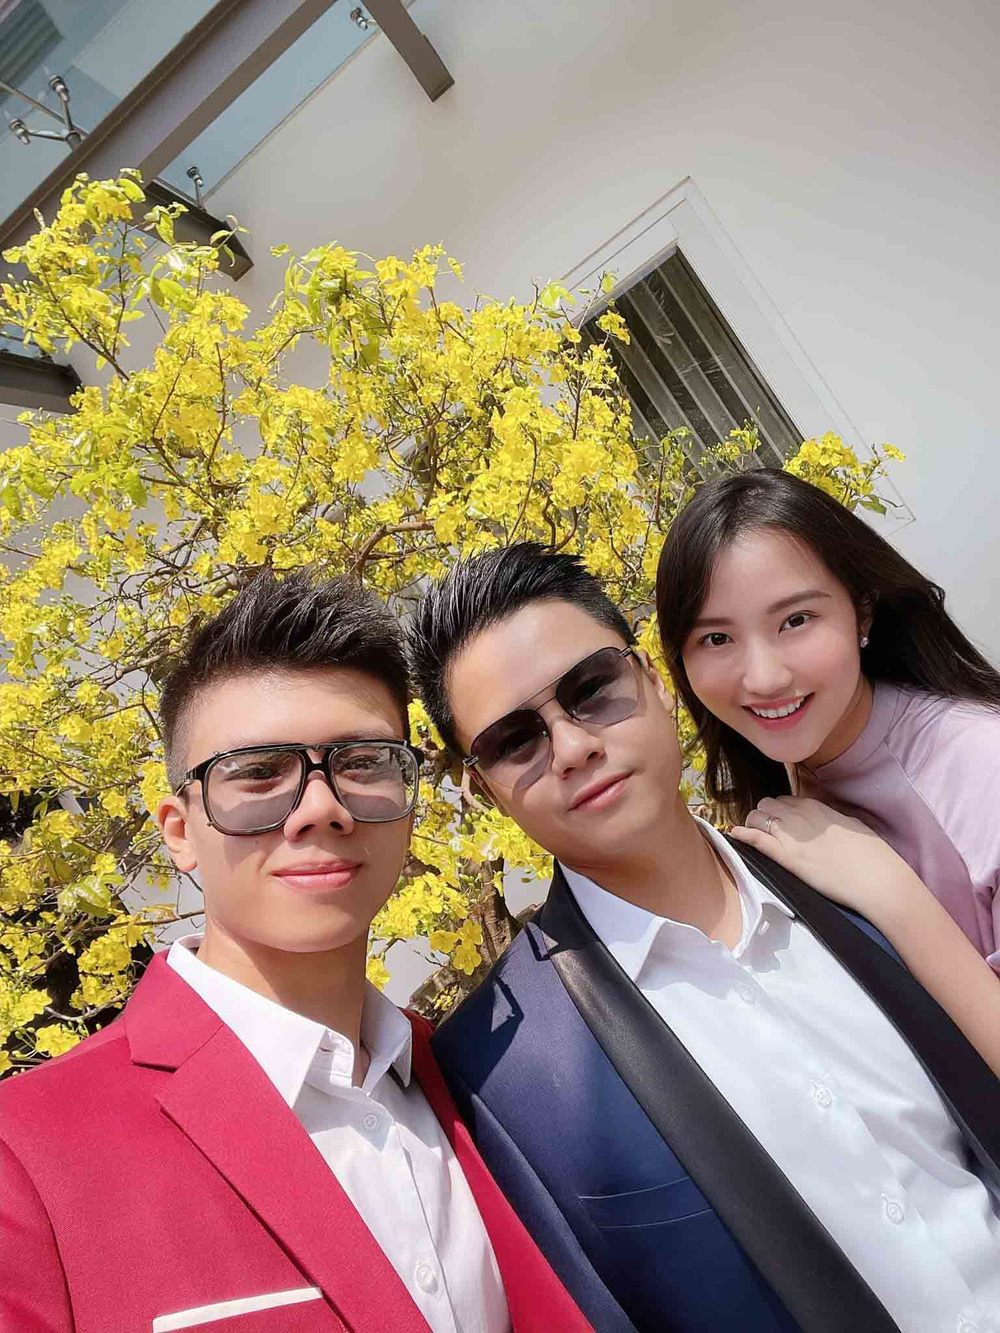  
Hình ảnh Phan Hoàng chụp cùng anh trai và chị dâu trong dịp Tết Tân Sửu. (Ảnh: FBNV)